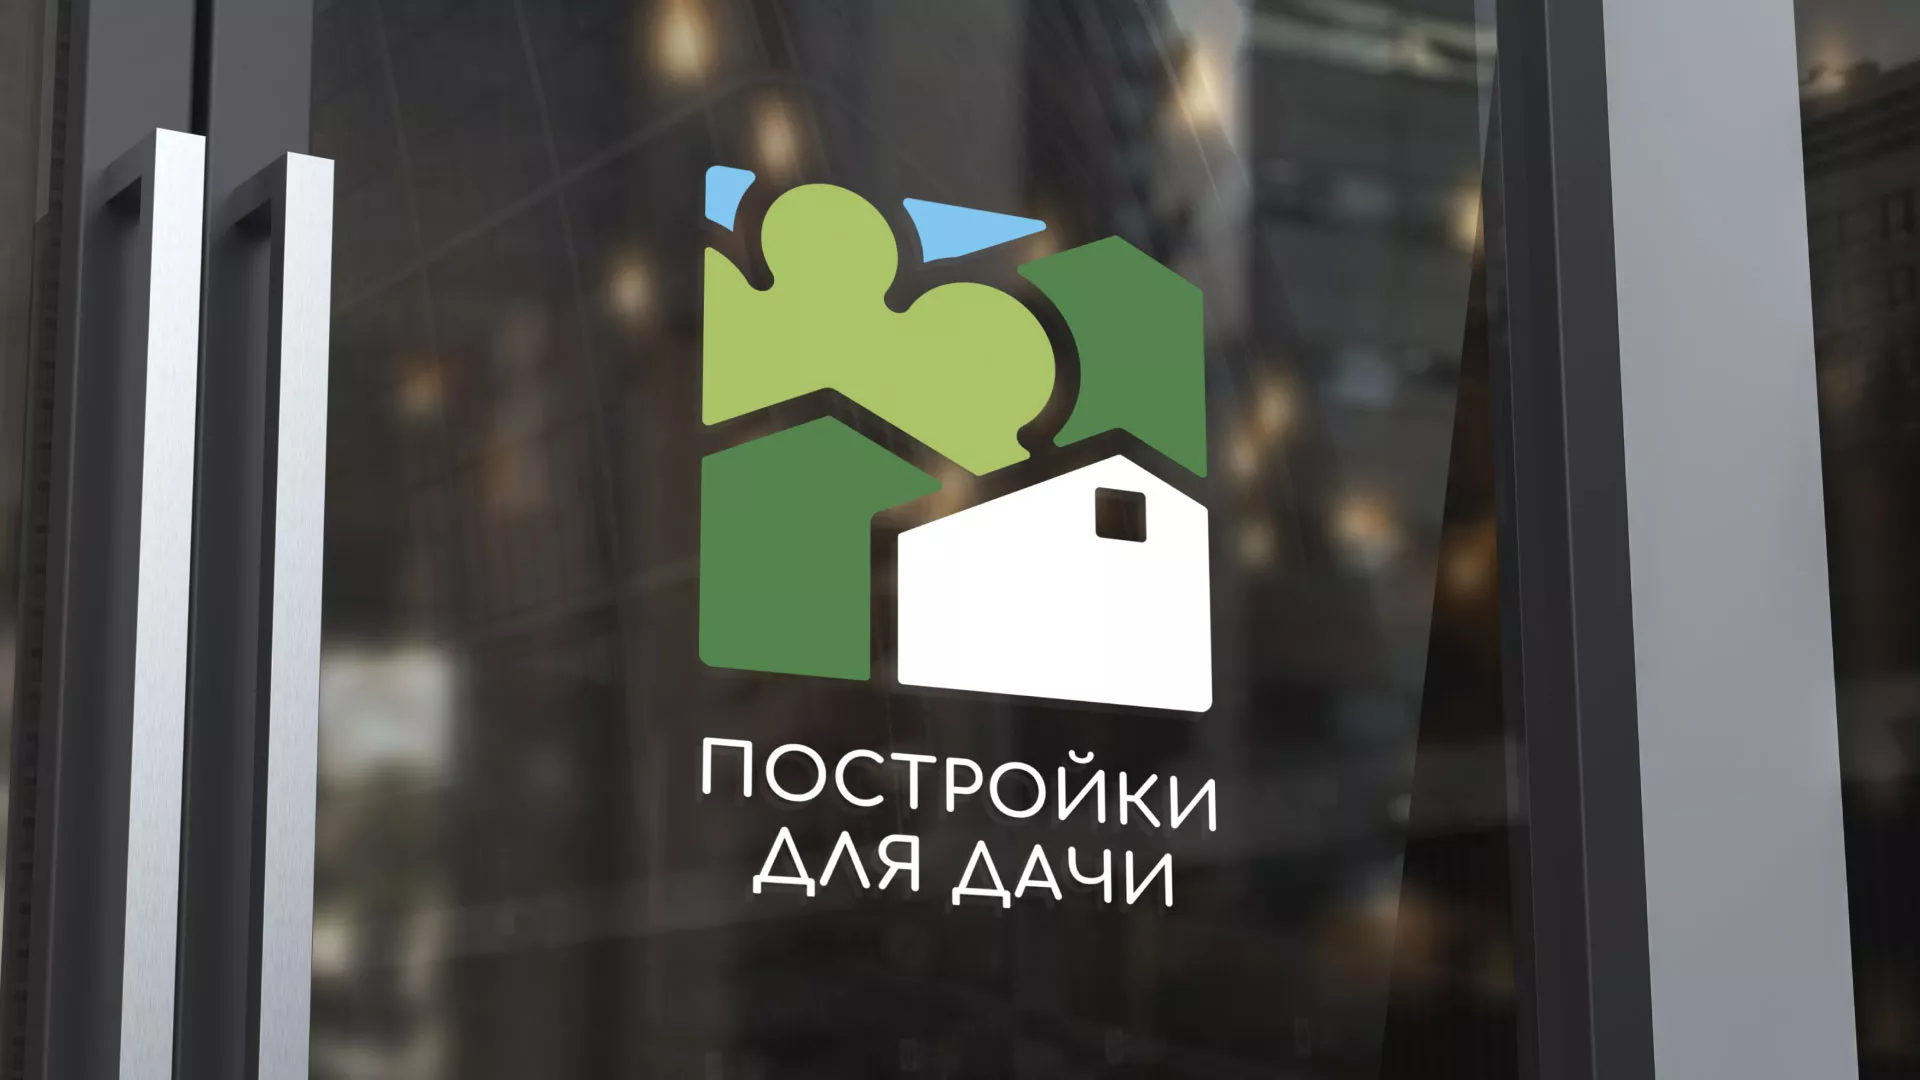 Разработка логотипа в Аниве для компании «Постройки для дачи»